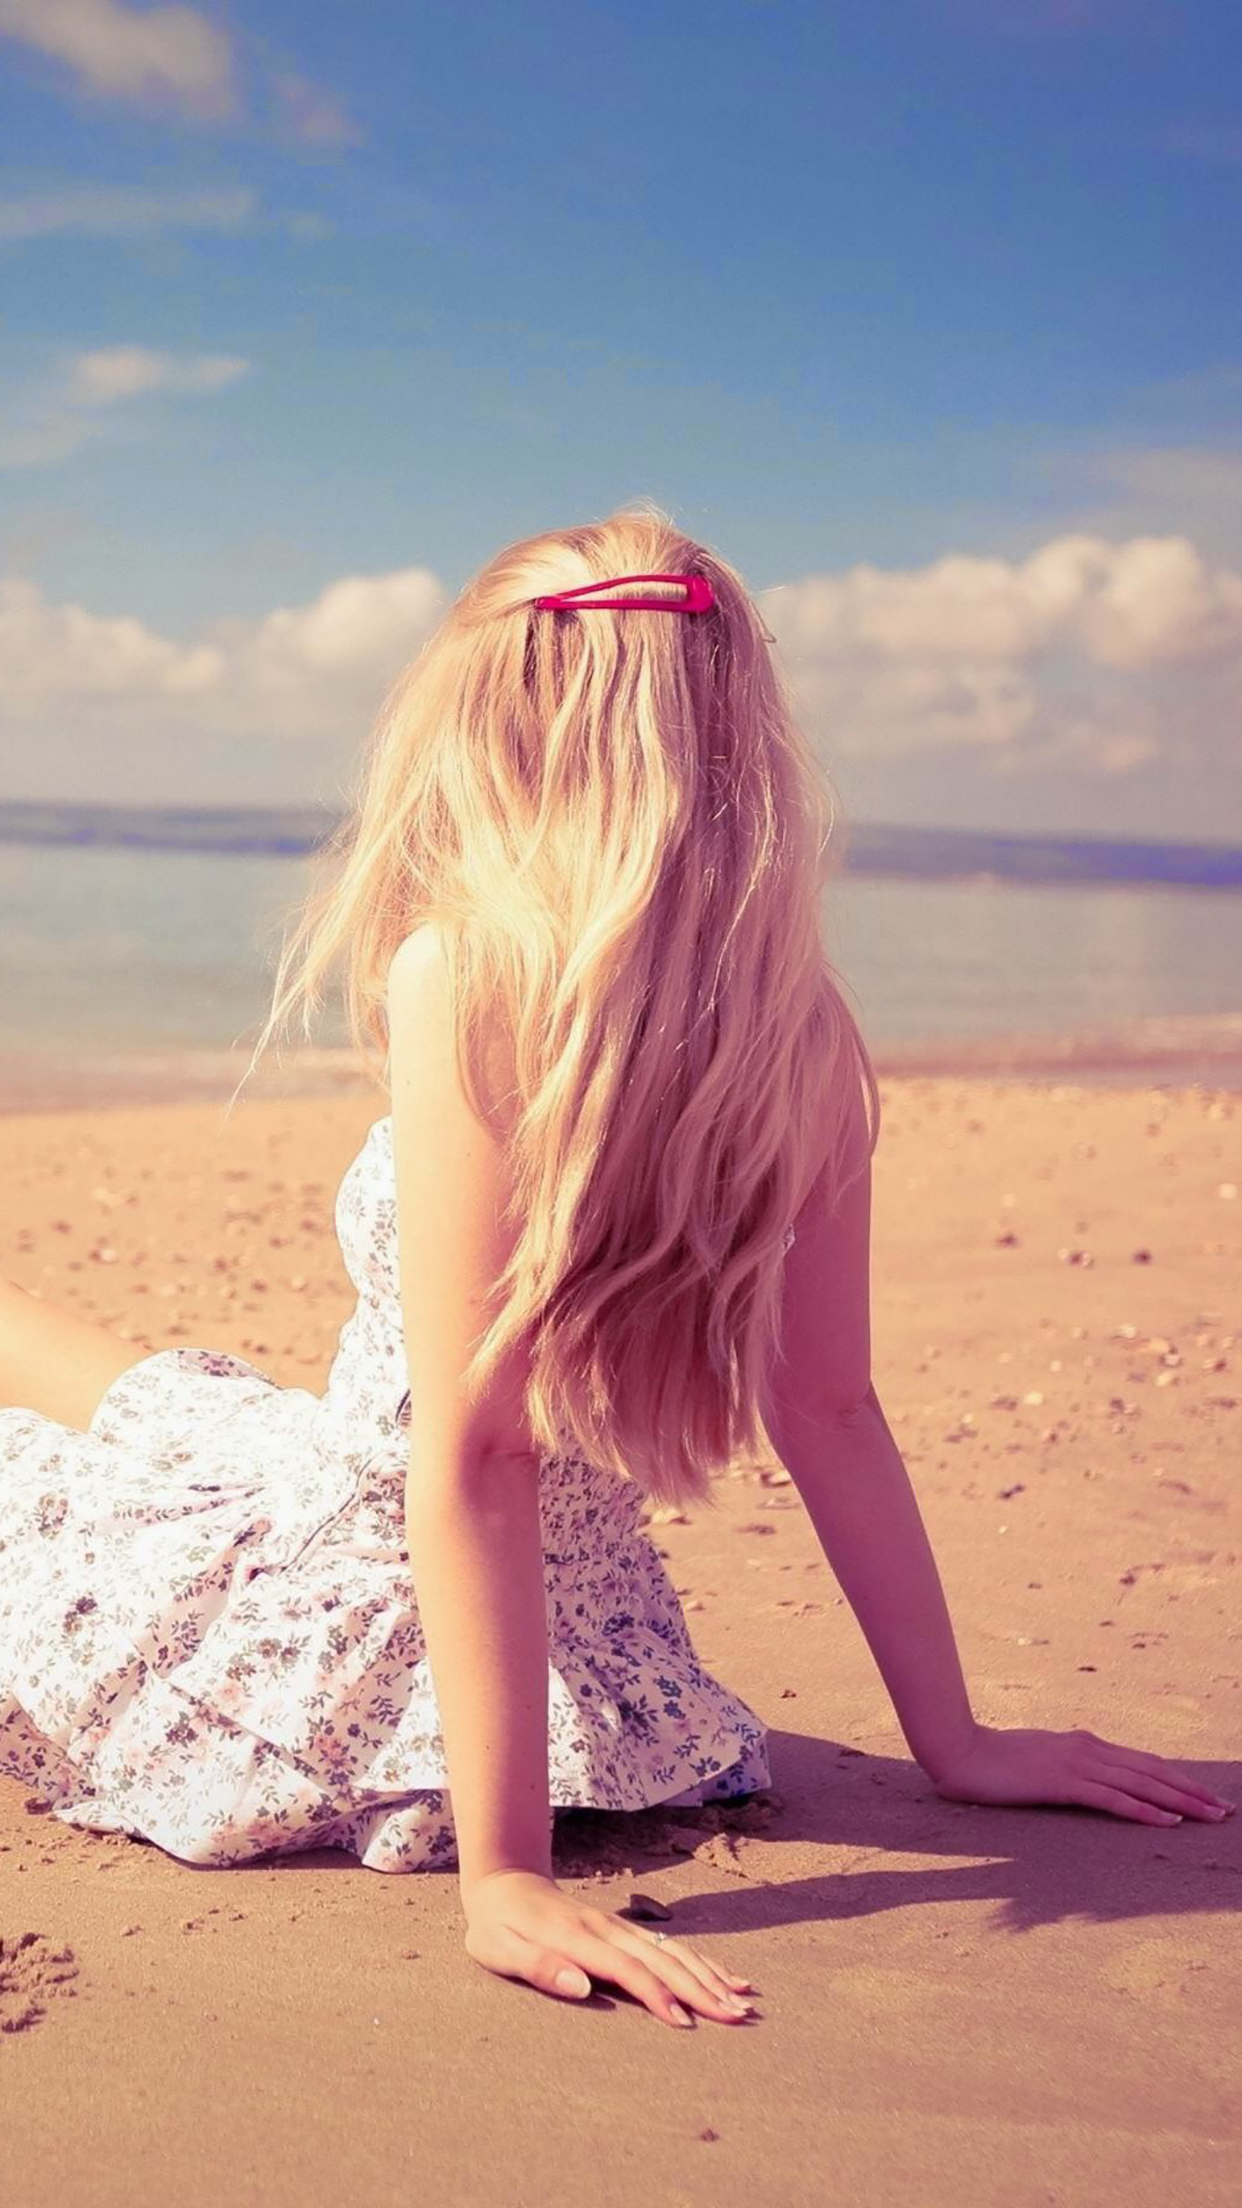 beach girl wallpaper,long hair,blond,beauty,pink,sunlight